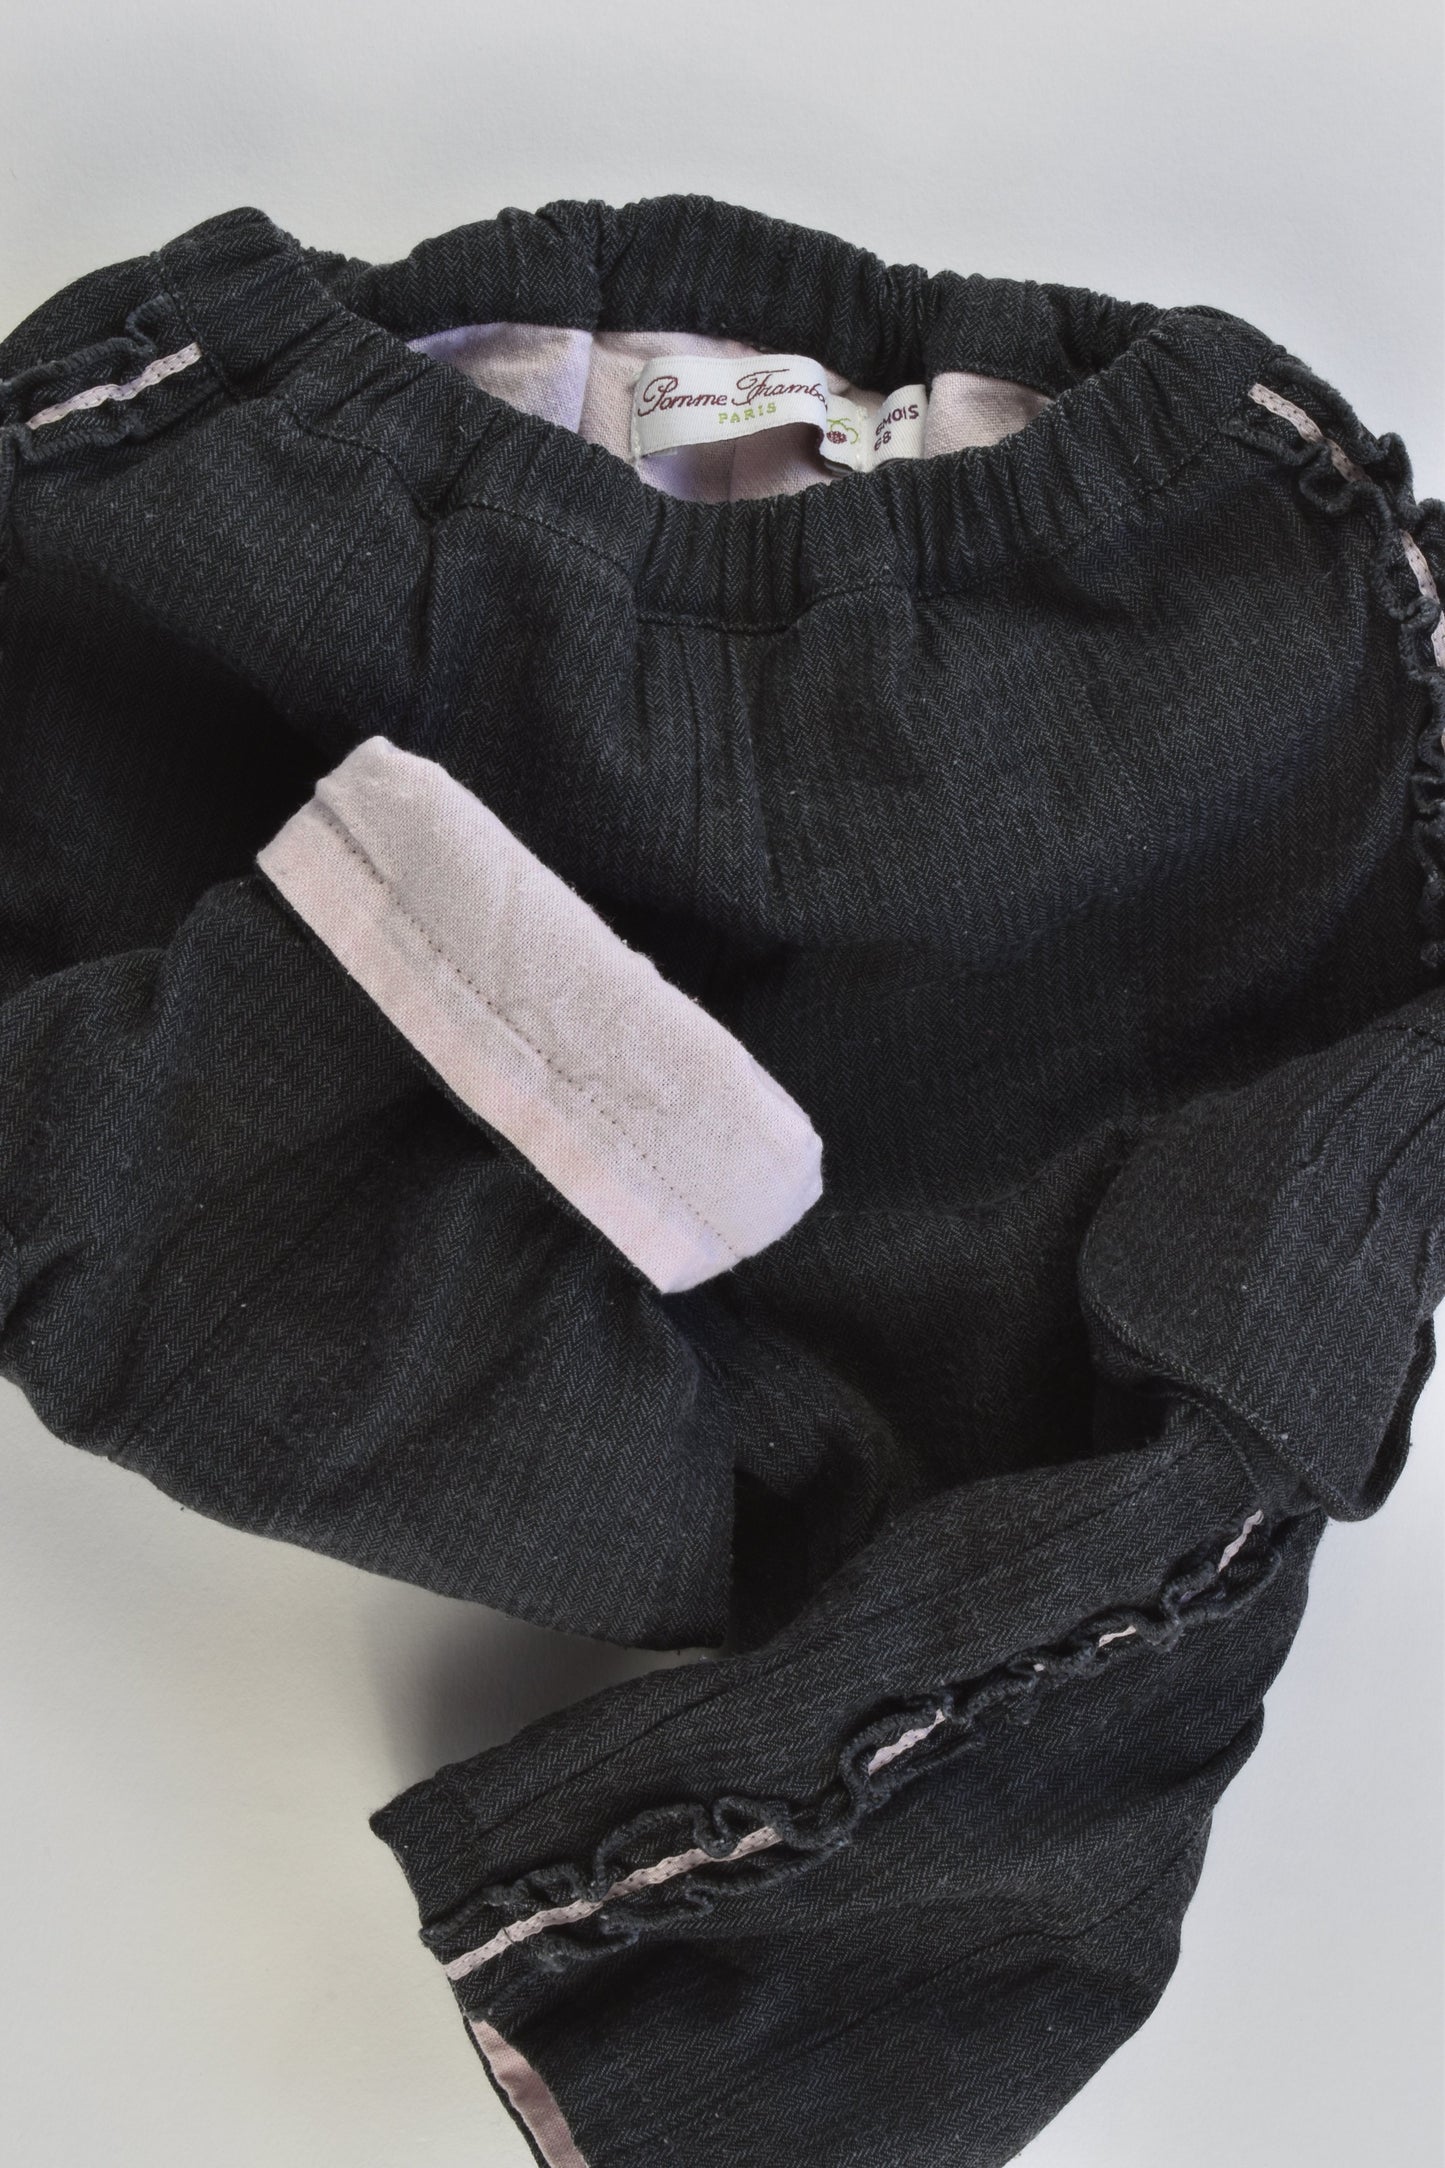 Pomme Framboise Paris Size 00 (6 months, 68 cm) Lined Pants